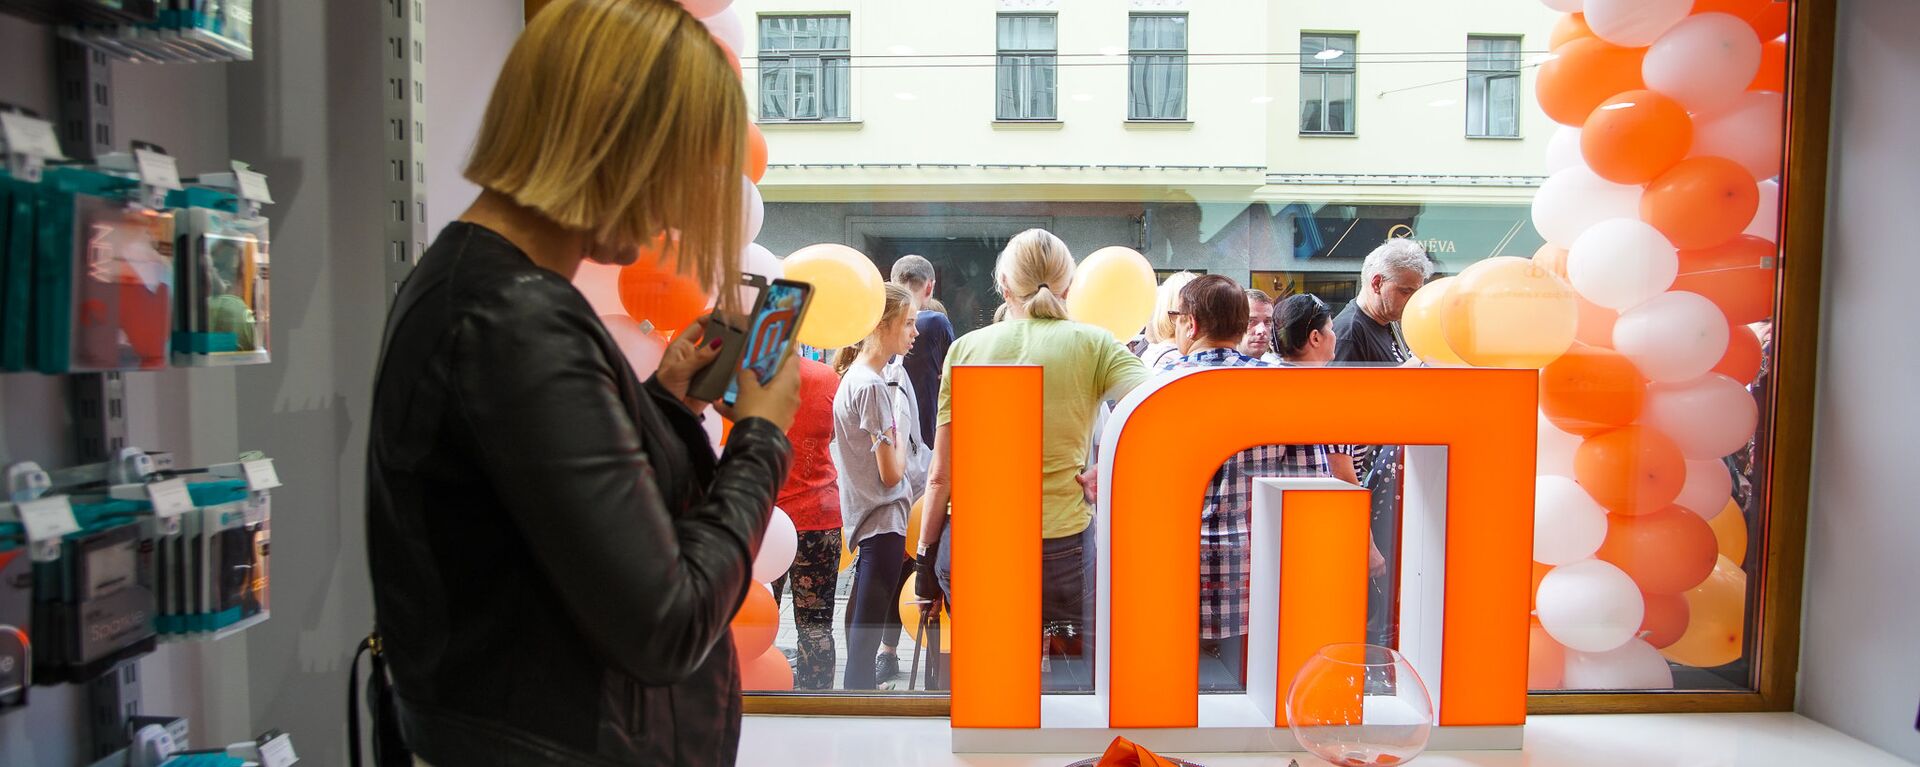 Открытие фирменного магазина Xiaomi в Риге - Sputnik Латвия, 1920, 07.09.2018